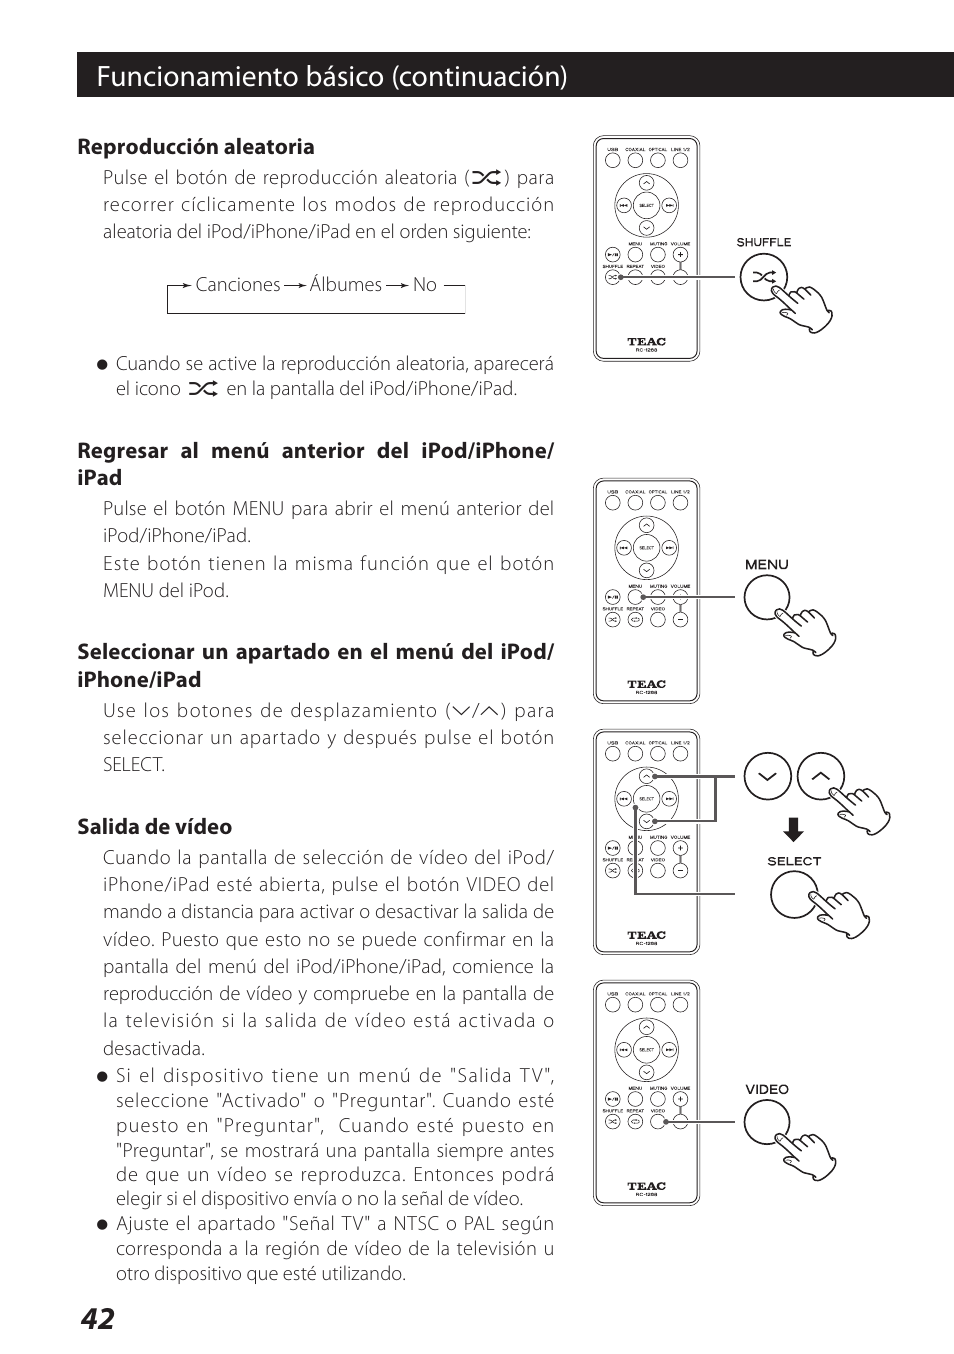 Funcionamiento básico (continuación) | Teac DS-H01DIGITAL DOCKING STATION 3D0806920B User Manual | Page 42 / 48